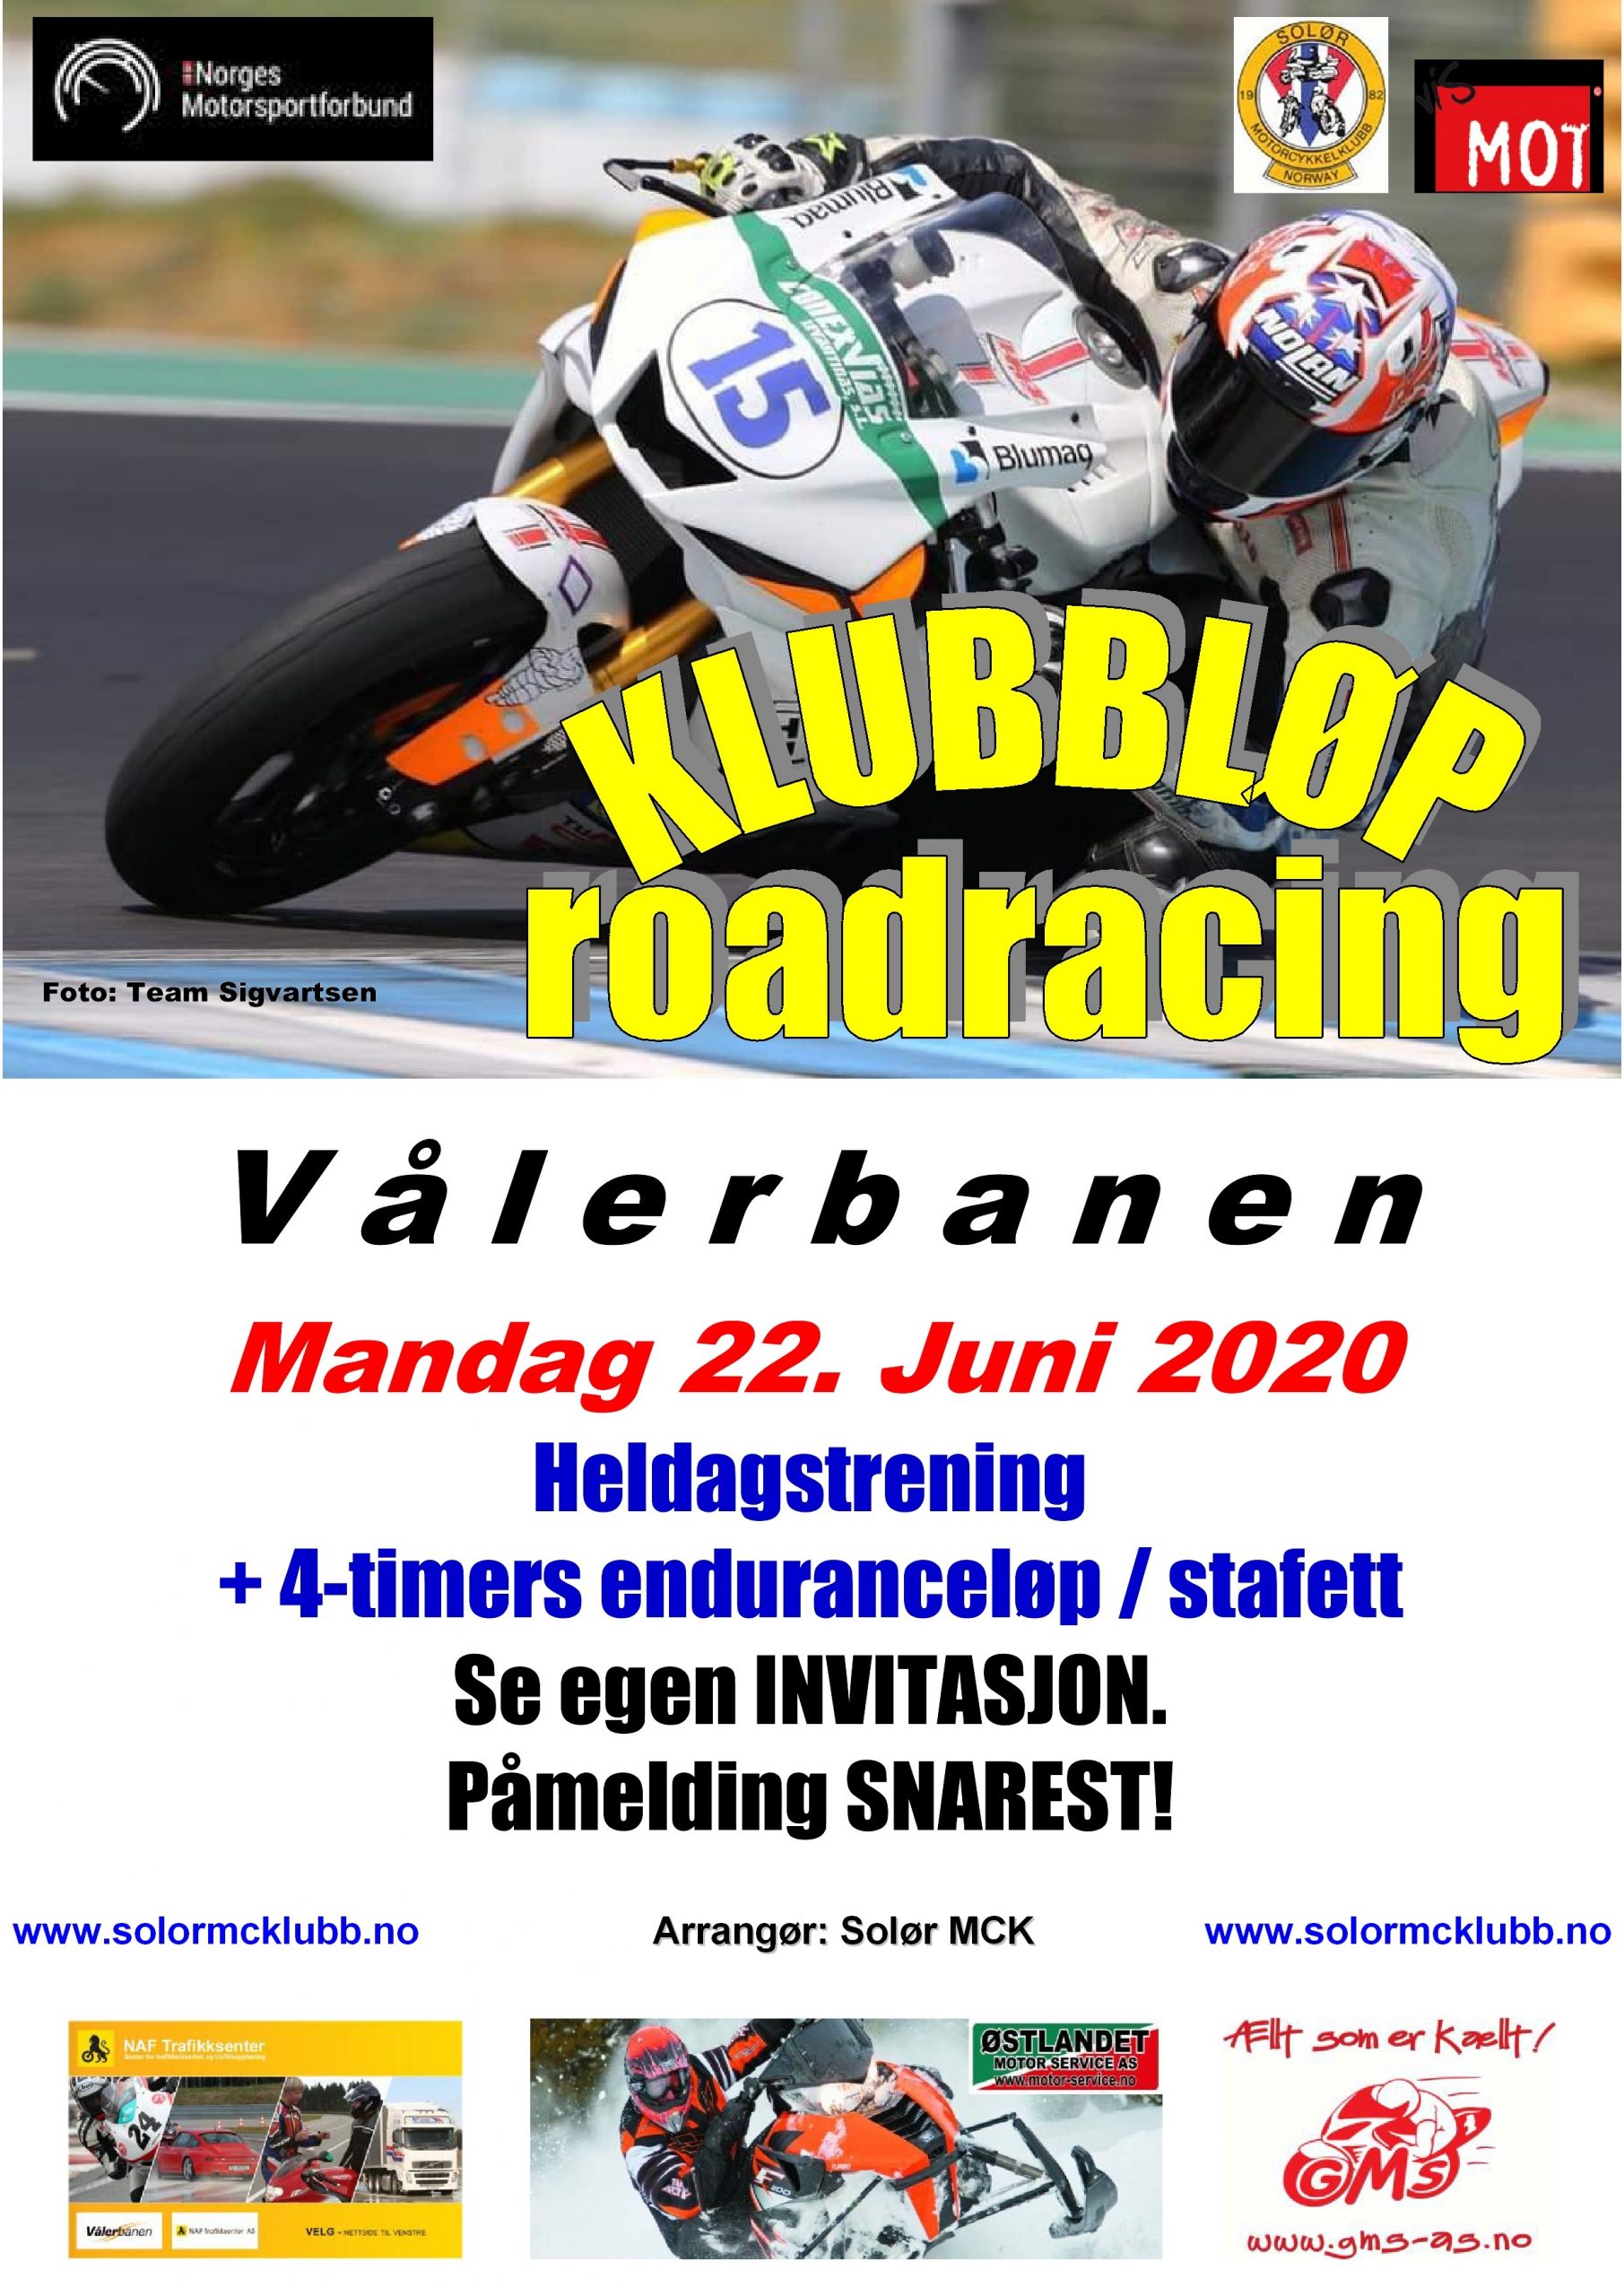 10 - Poster klubbløp 1 - RR 2020